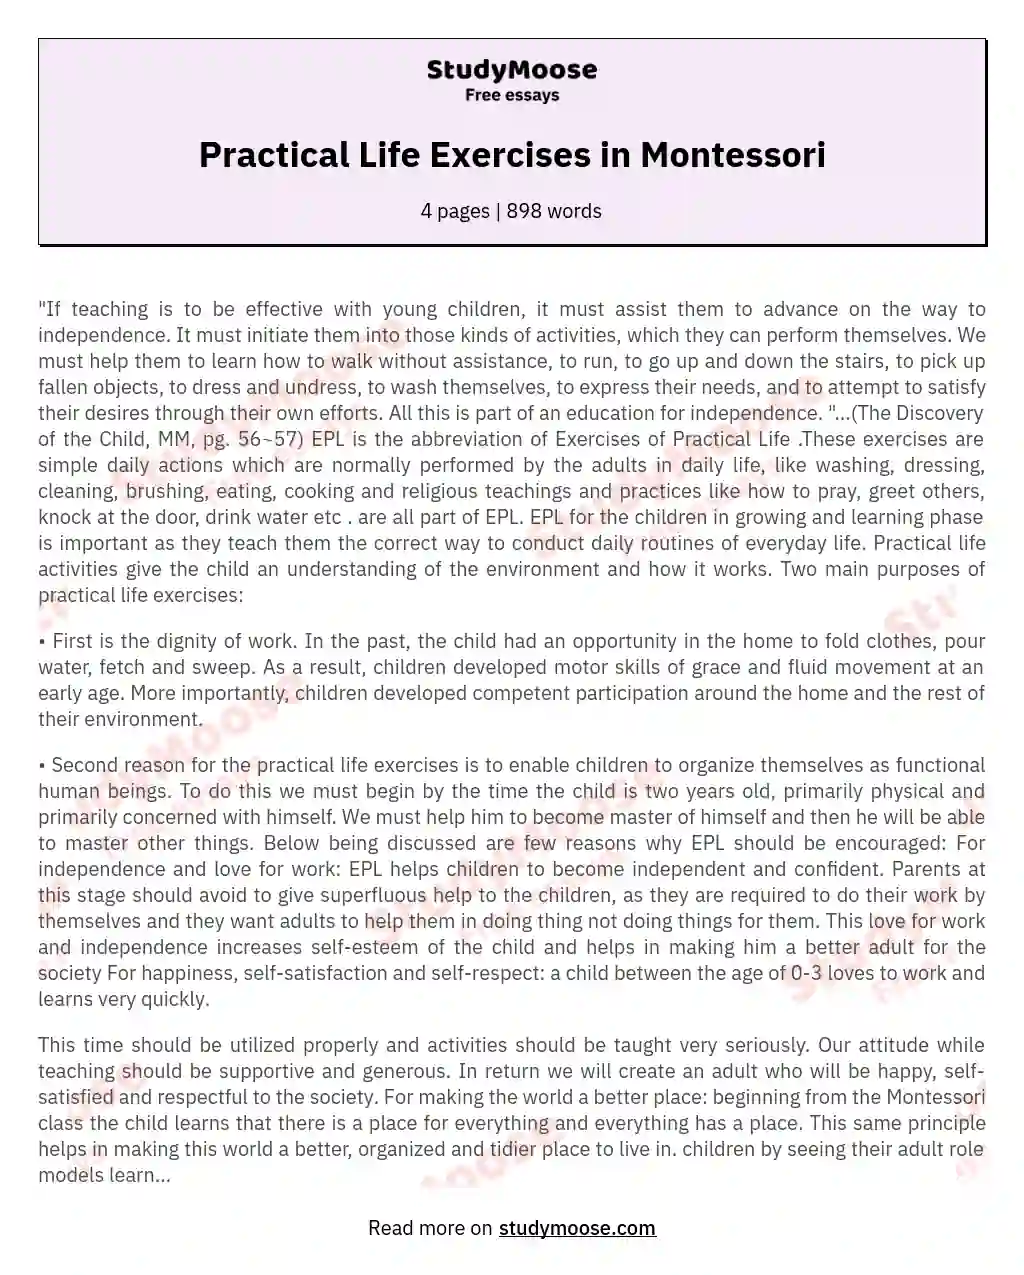 Practical Life Exercises in Montessori essay